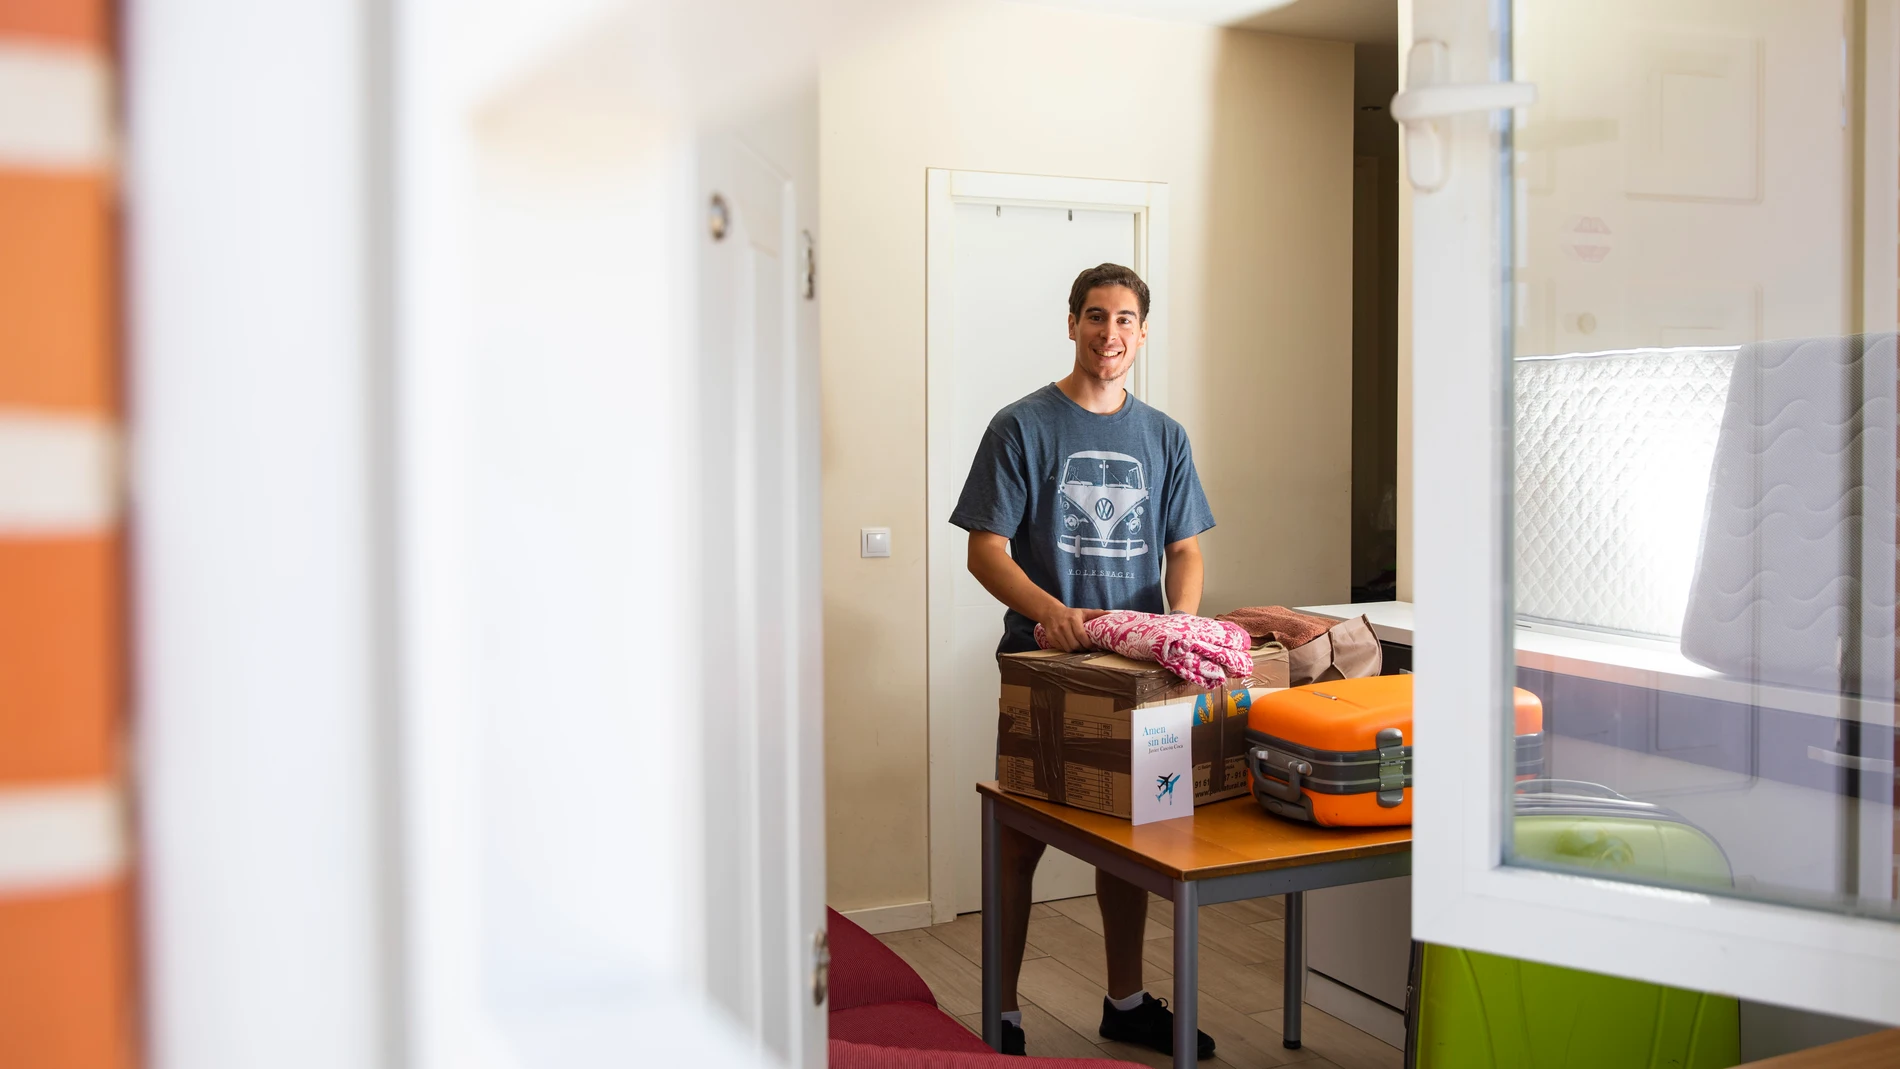 Entrevista a Javier Cascos fundador de Amaqtedu, que acoge en un piso comprado a personas sin hogar.